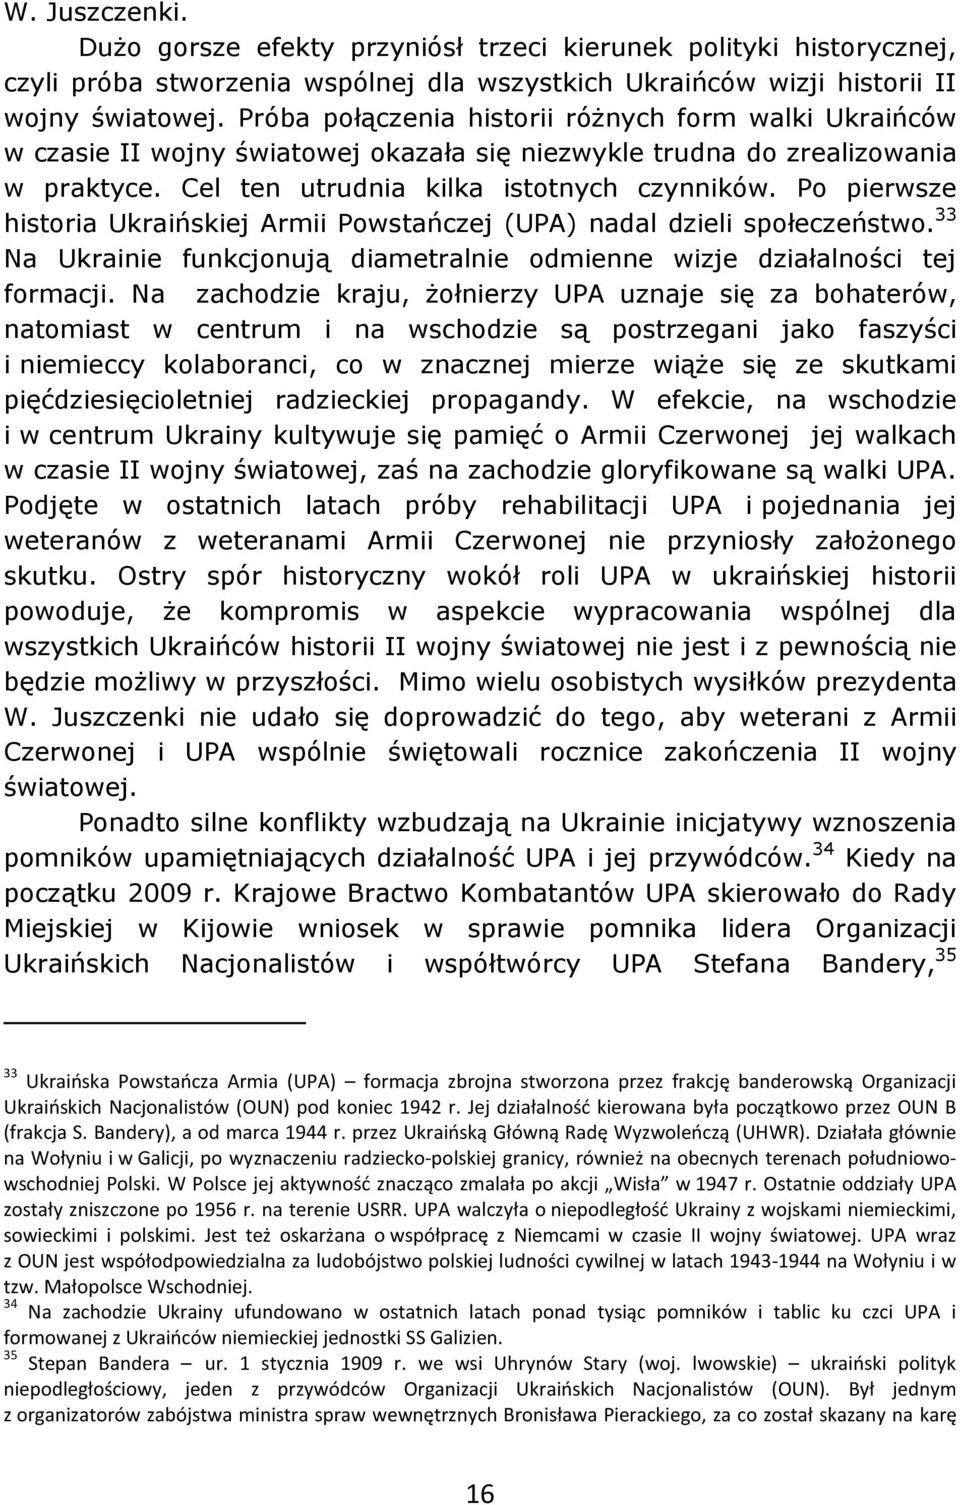 Po pierwsze historia Ukraińskiej Armii Powstańczej (UPA) nadal dzieli społeczeństwo. 33 Na Ukrainie funkcjonują diametralnie odmienne wizje działalności tej formacji.